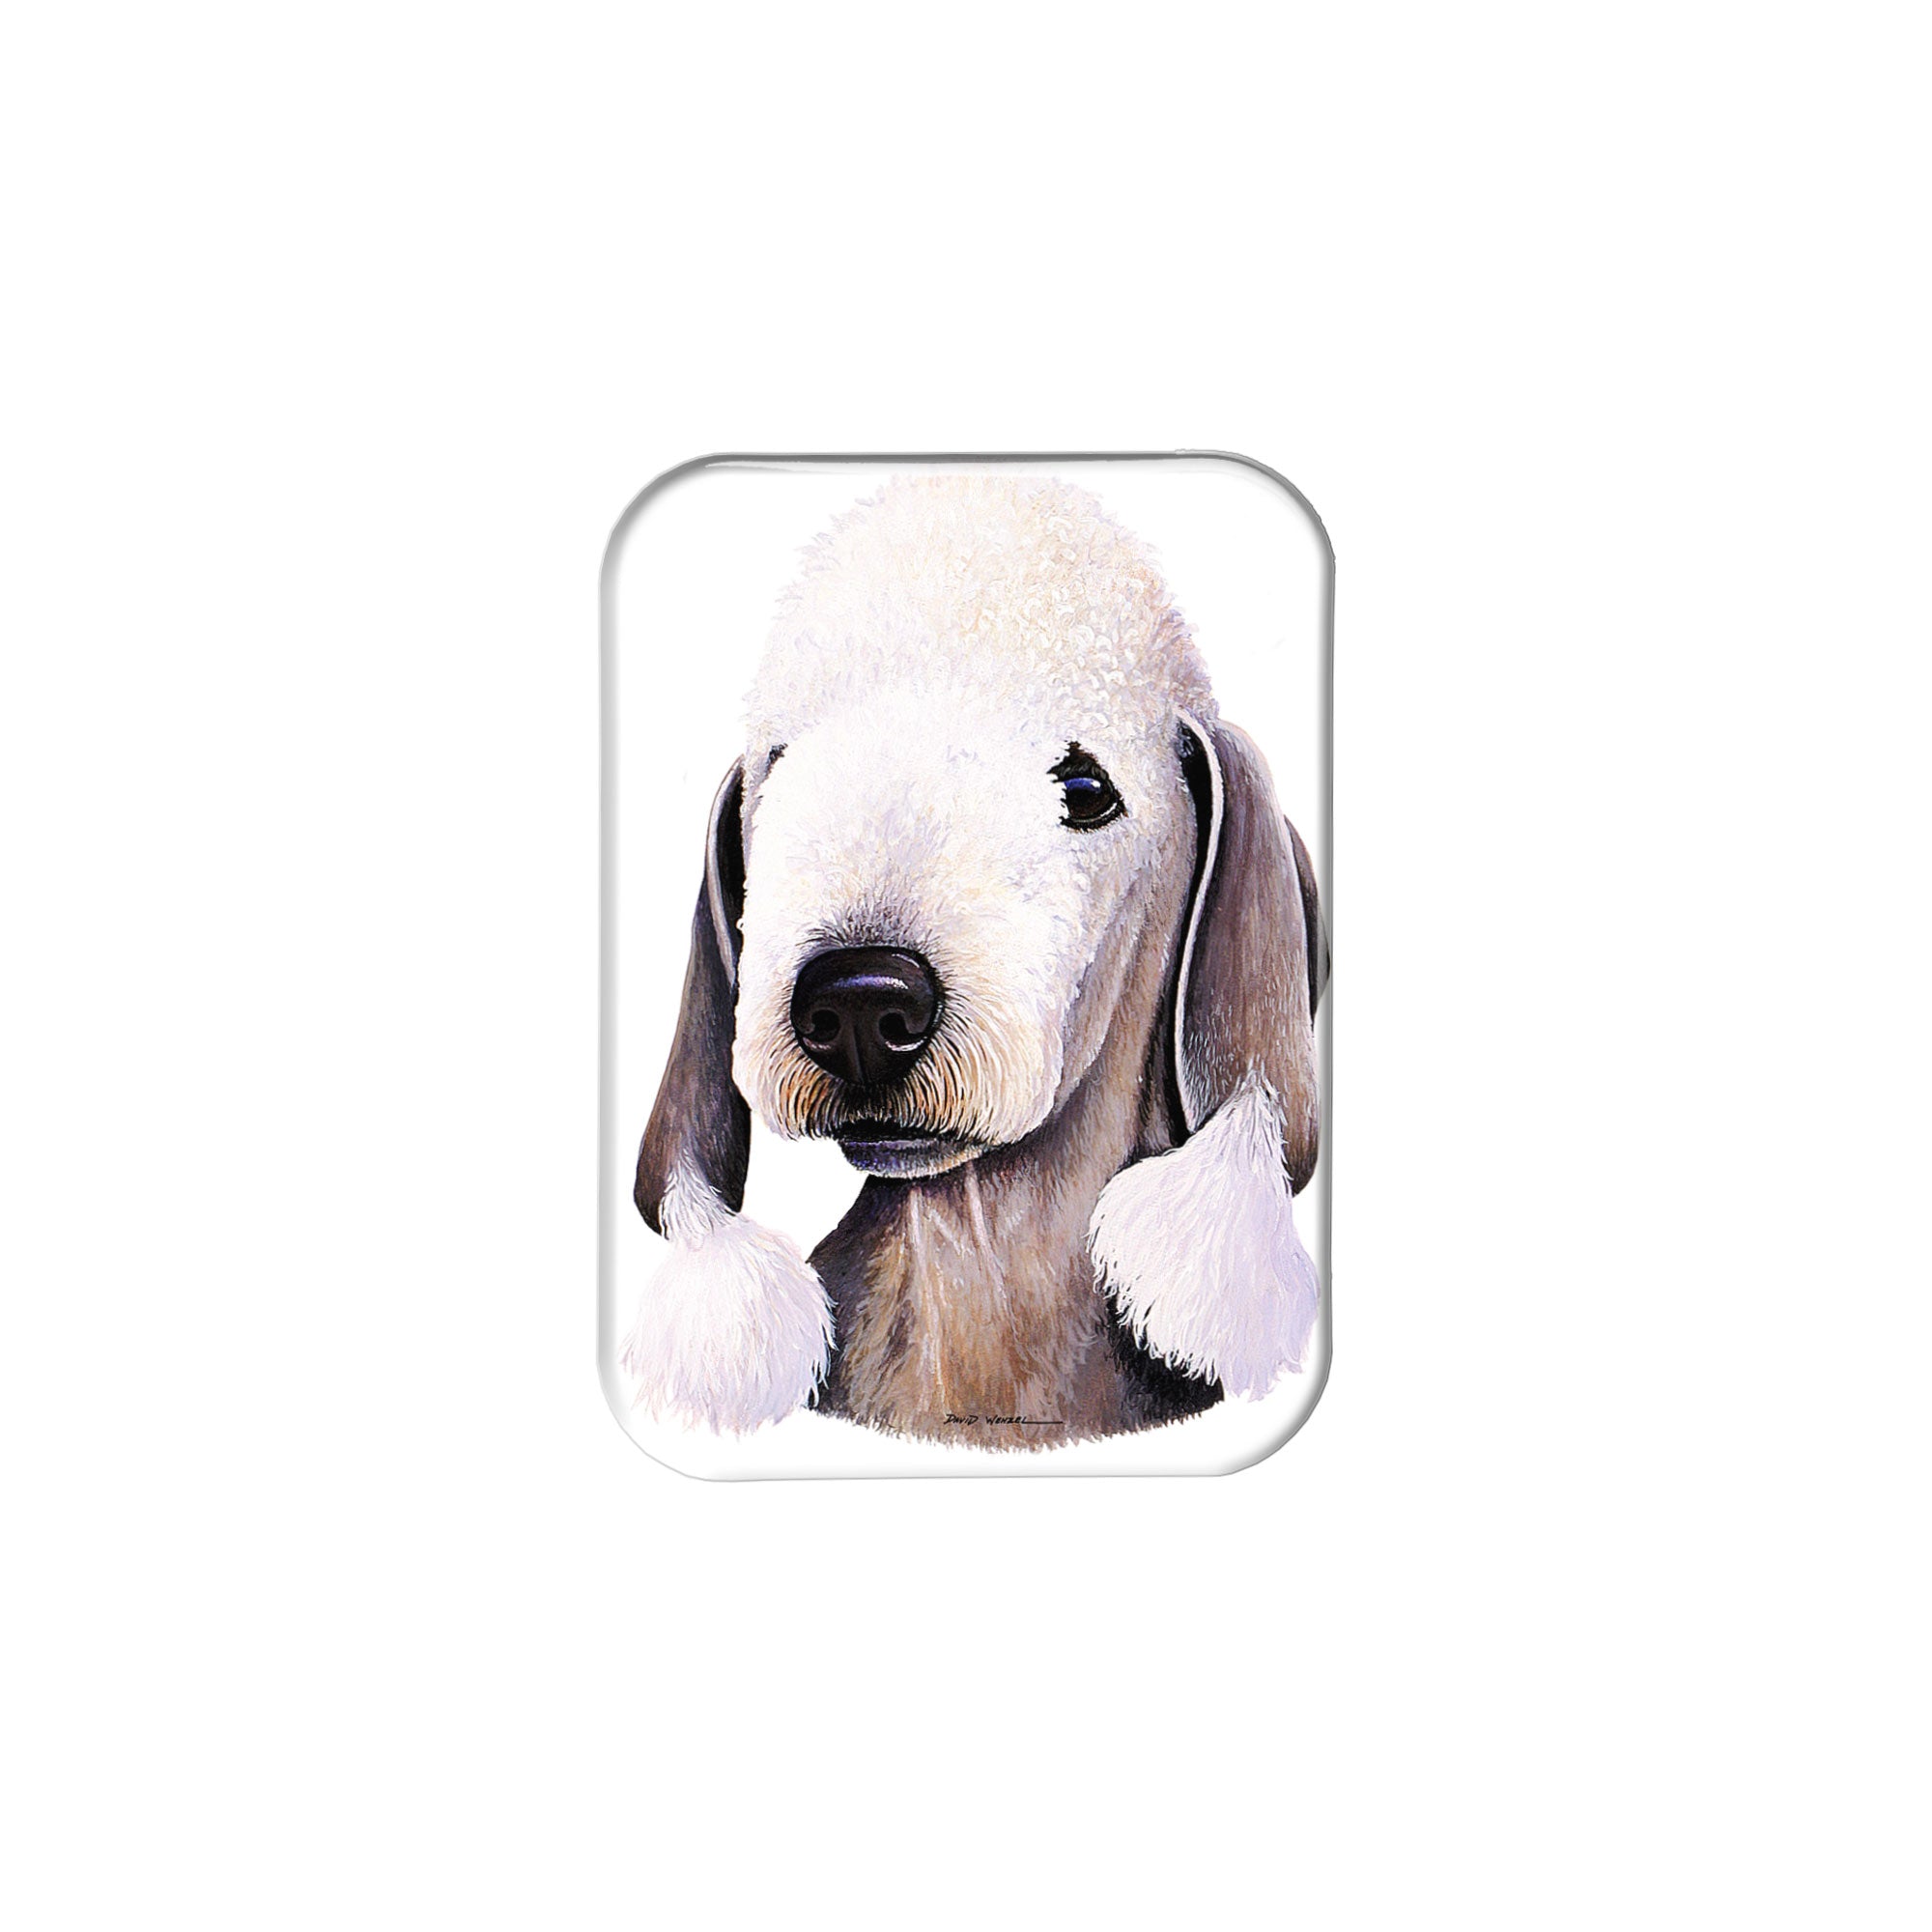 "Bedlington Terrier" - 2.5" X 3.5" Rectangle Fridge Magnets